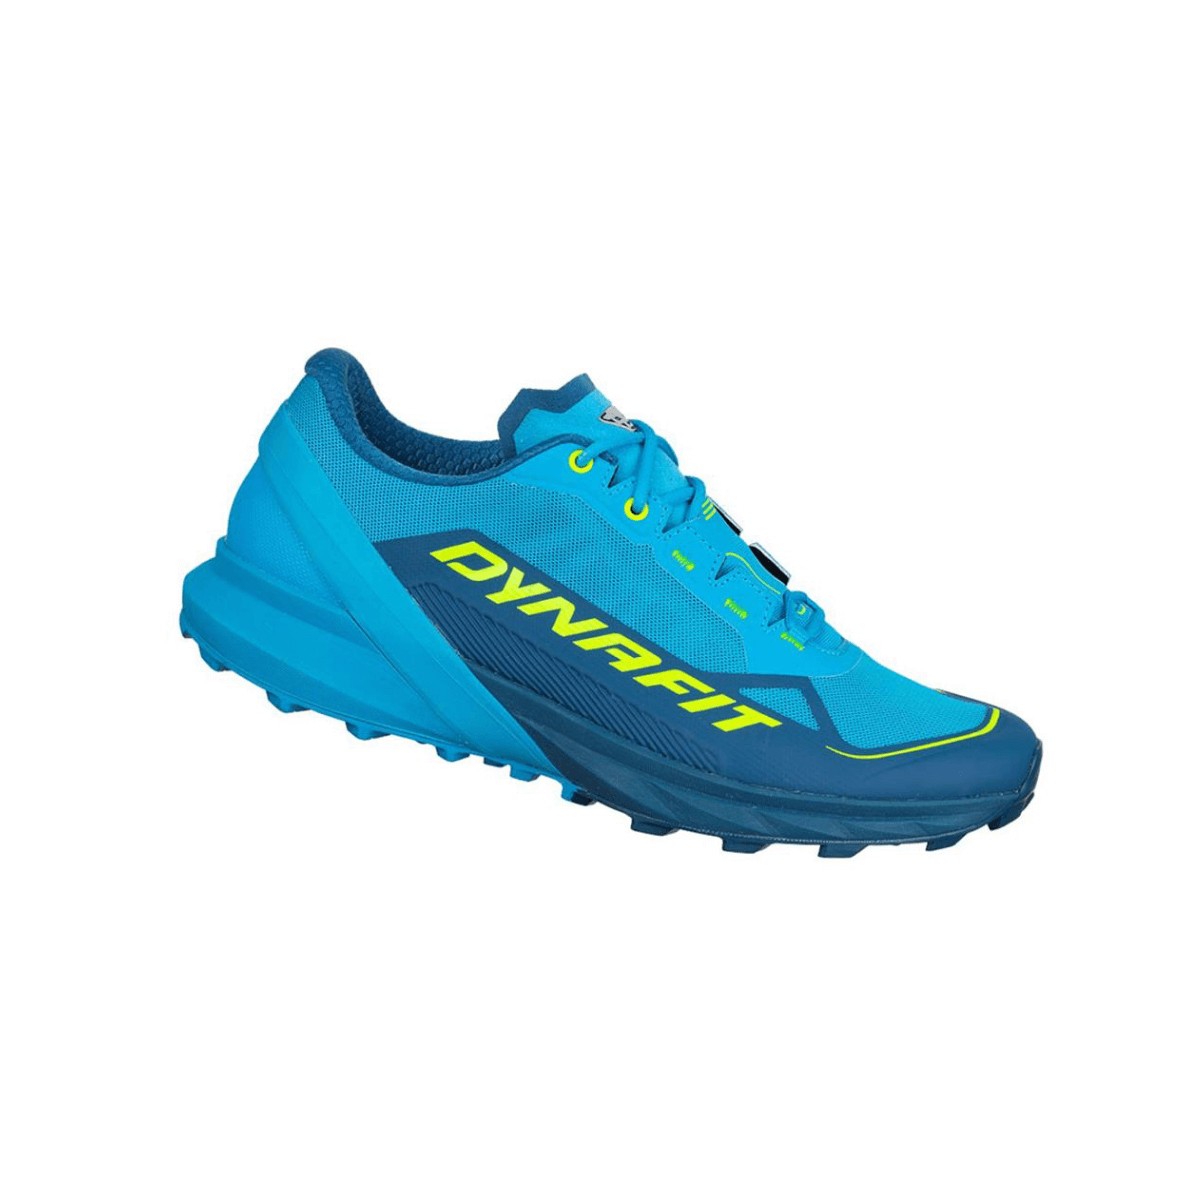 Chaussures Dynafit Ultra 50 Bleu vert AW22, Taille 44,5 - EUR